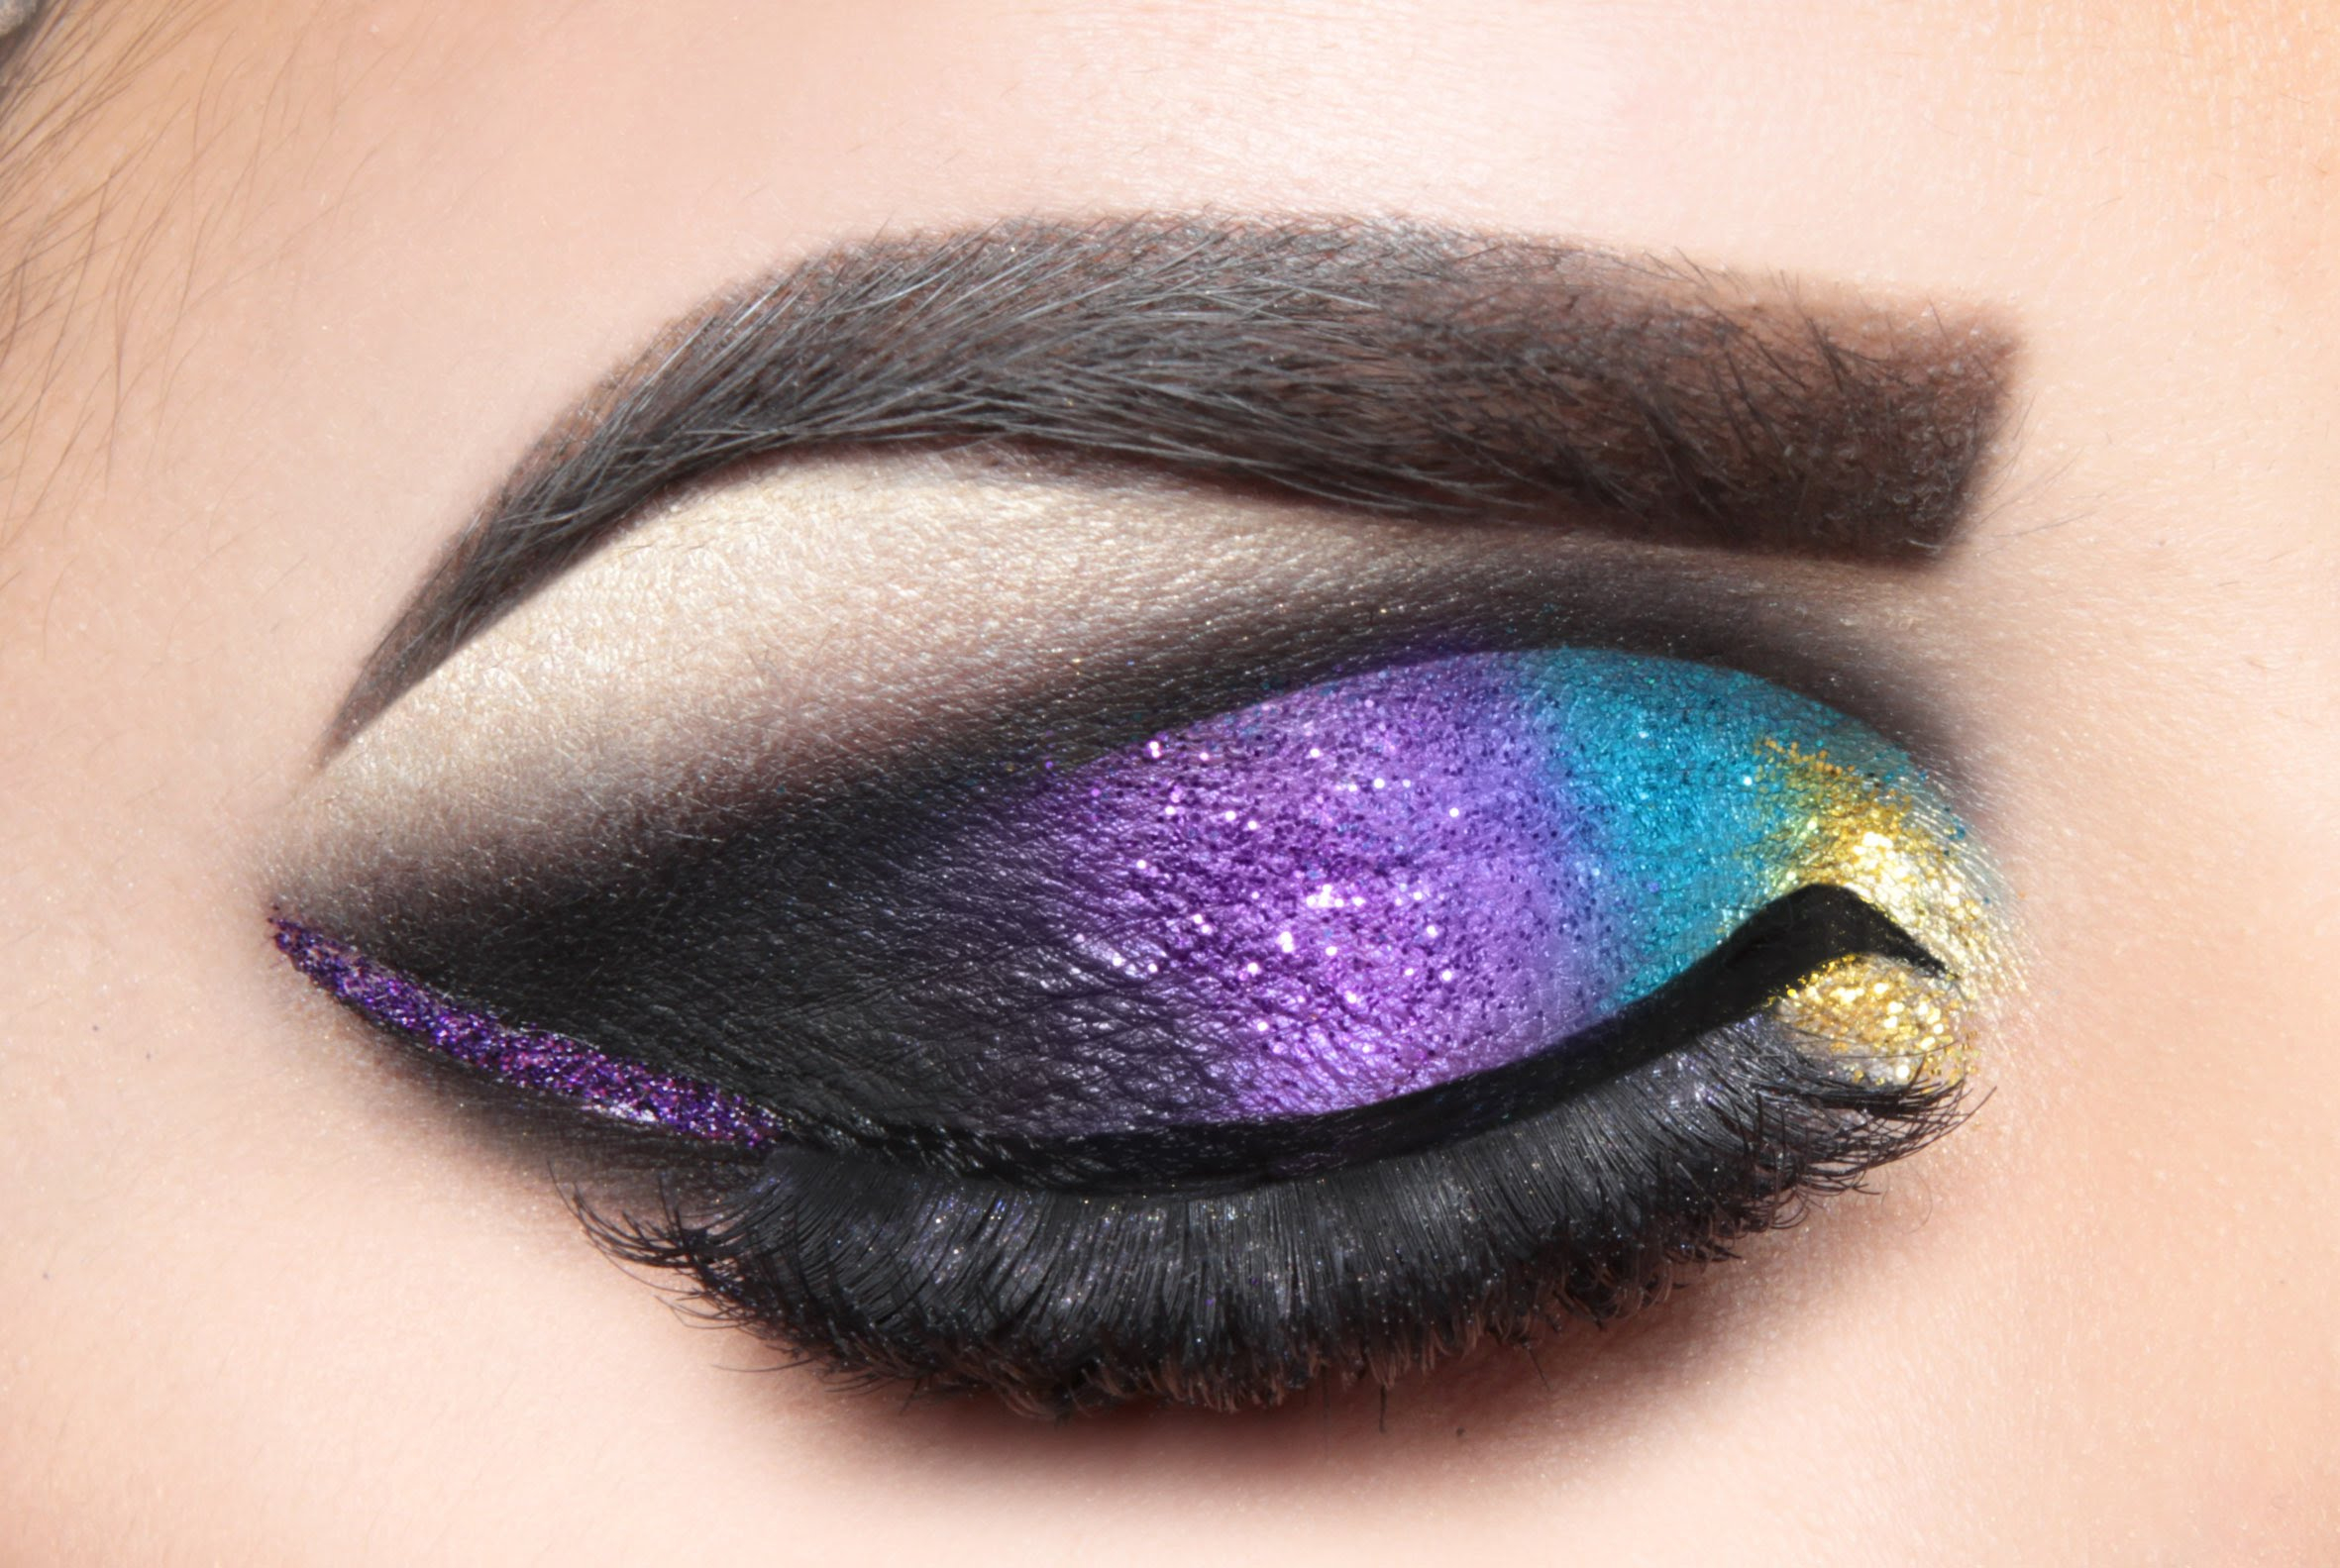 Blue Arabic Eye Makeup Advanced Makeup Tutorials From The Best Beauty Bloggers Makeup